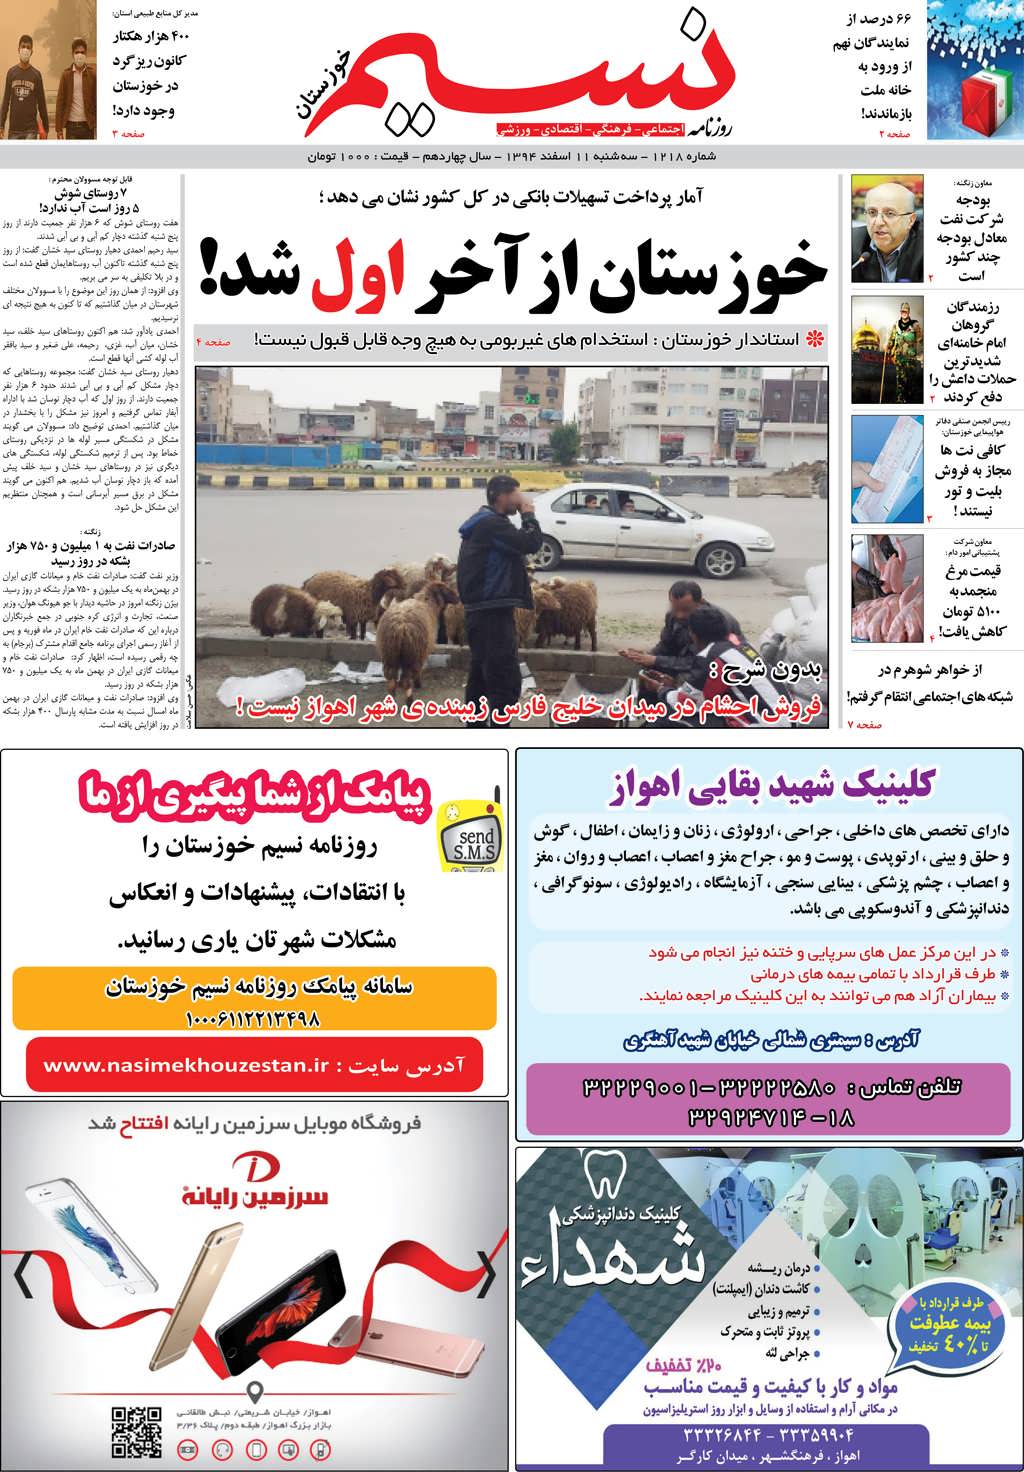 صفحه اصلی روزنامه نسیم شماره 1218